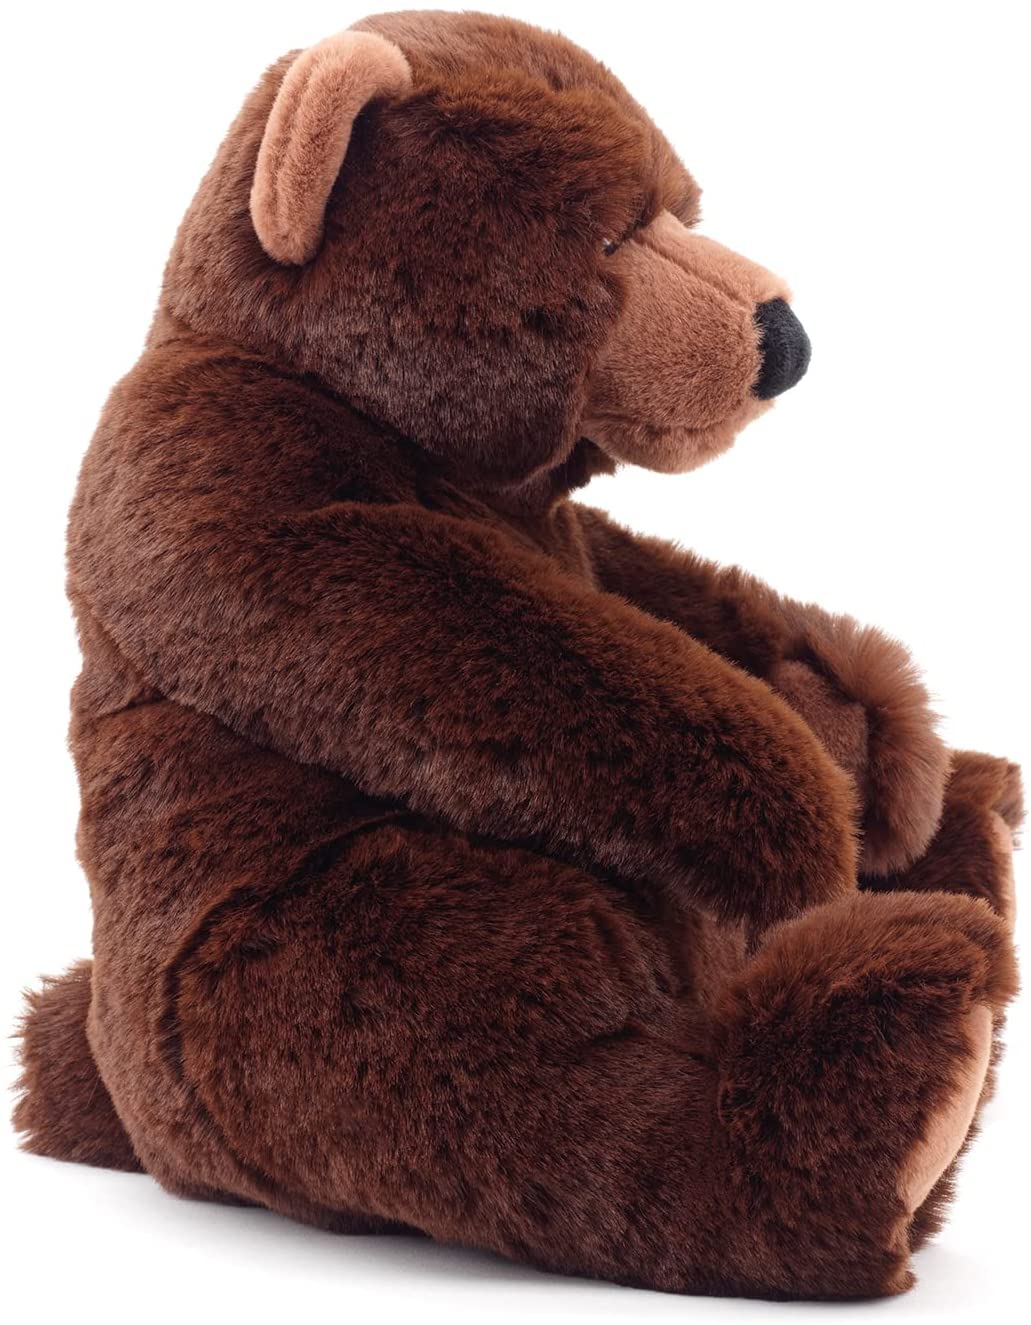 Uni-Toys - Braunbär klein, sitzend - "Yannie" - superweich - 21 cm (Höhe) - Plüsch-Bär, Teddy, Teddybär - Plüschtier, Kuscheltier 